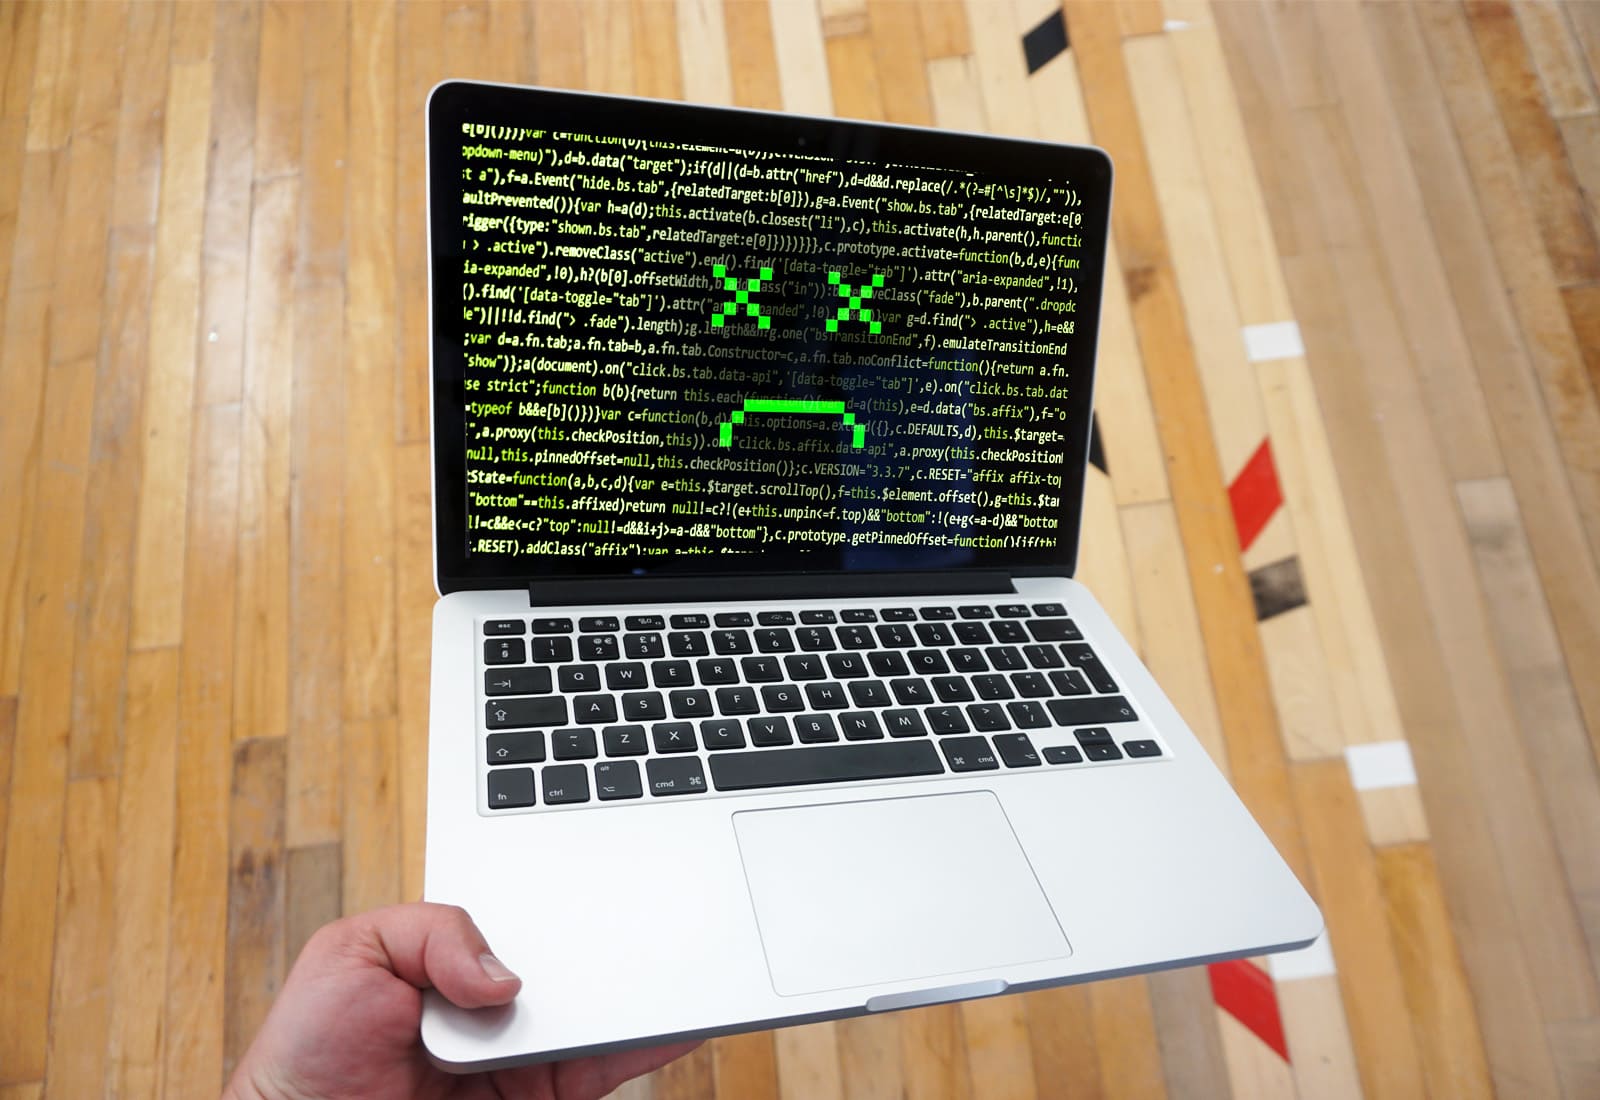 dead MacBook hack